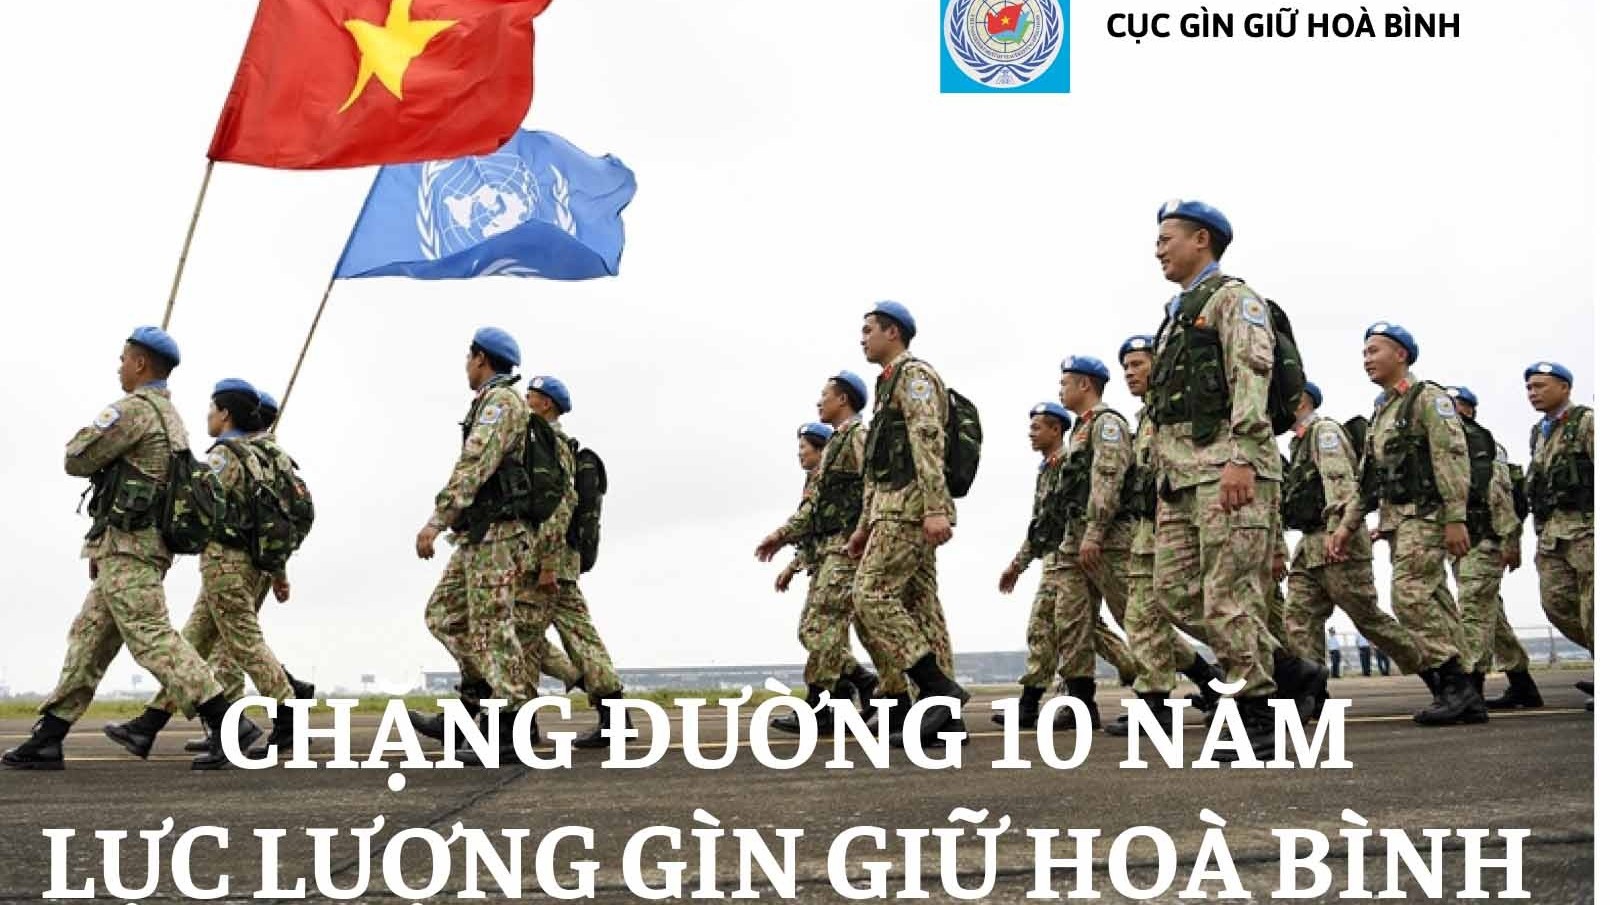 Chặng đường 10 năm tham gia lực lượng gìn giữ hoà bình Liên hợp quốc của Việt Nam